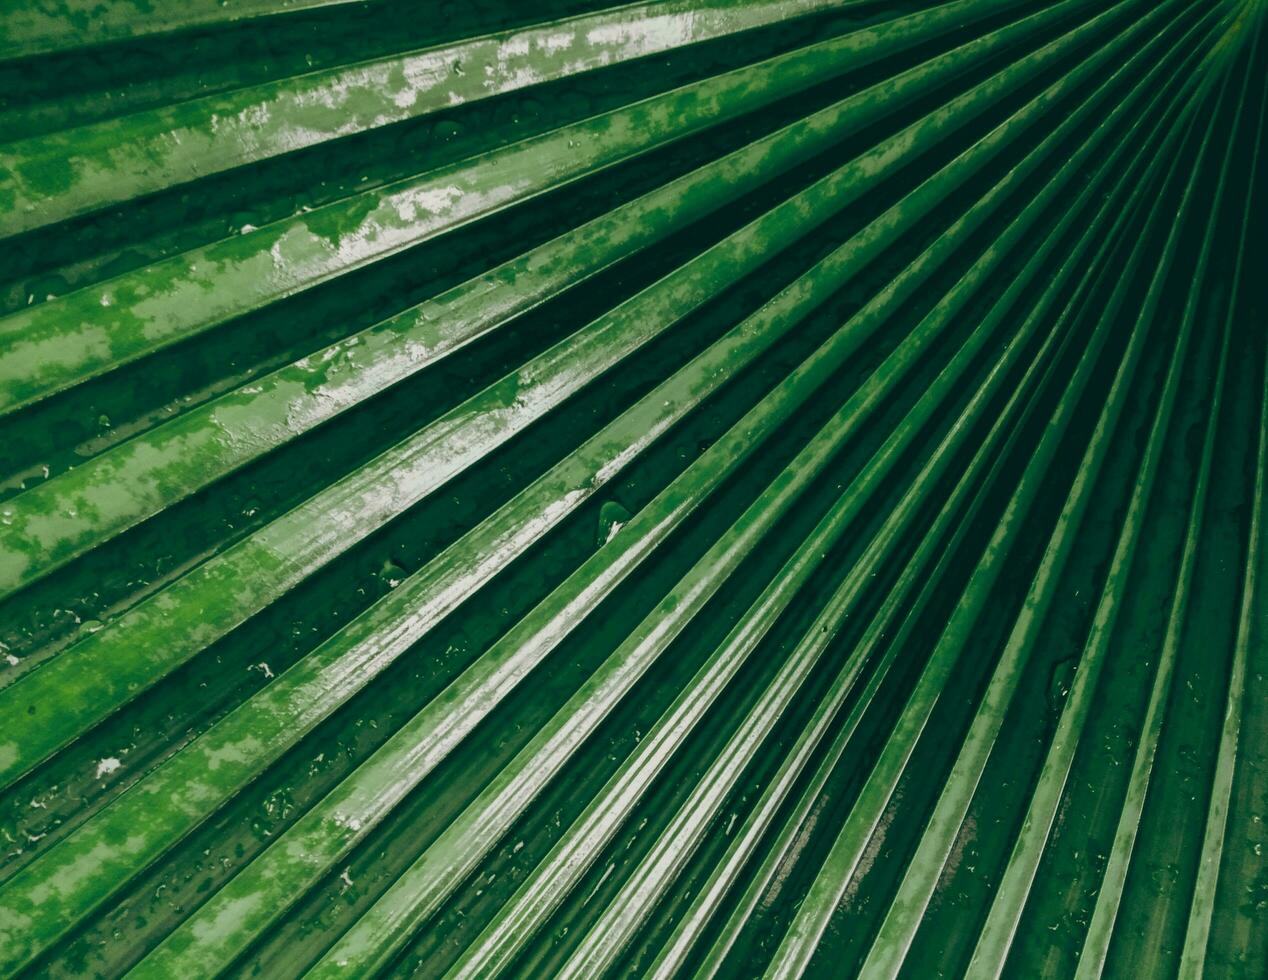 verde Palma folha padronizar com água gotas natural brilhante pano de fundo fundo Projeto modelo papel de parede foto